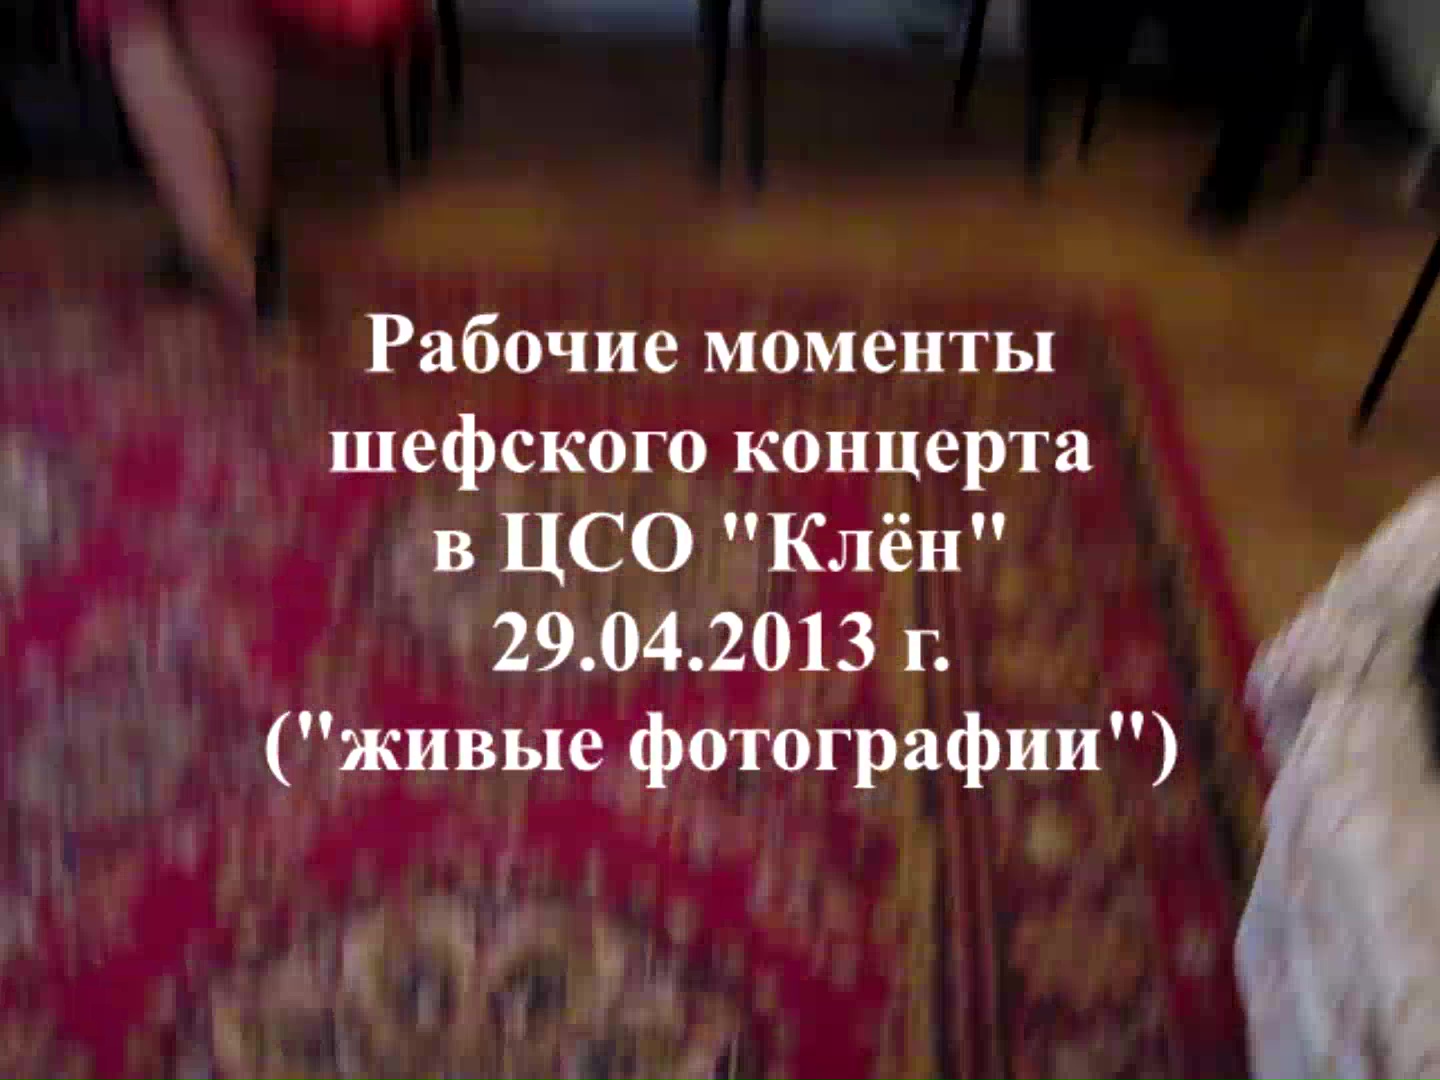 Рабочие моменты шефского концерта в ЦСО "Клён" 29.04.2013 г.("живые фотографии")